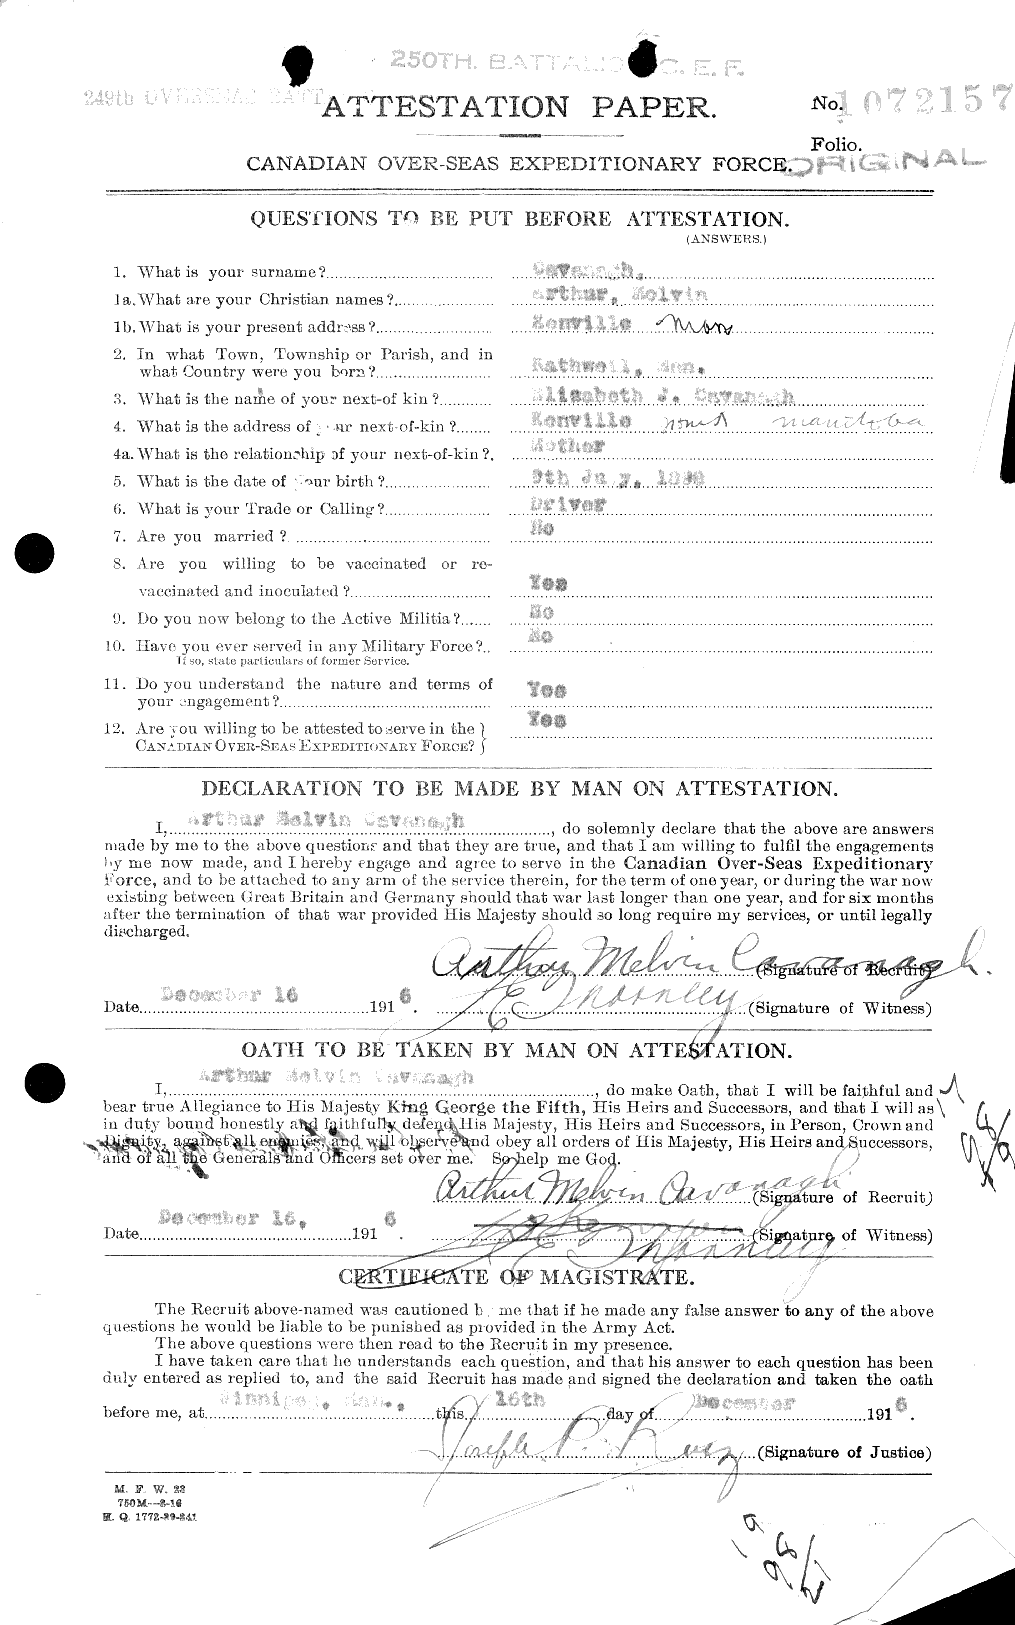 Dossiers du Personnel de la Première Guerre mondiale - CEC 007586a